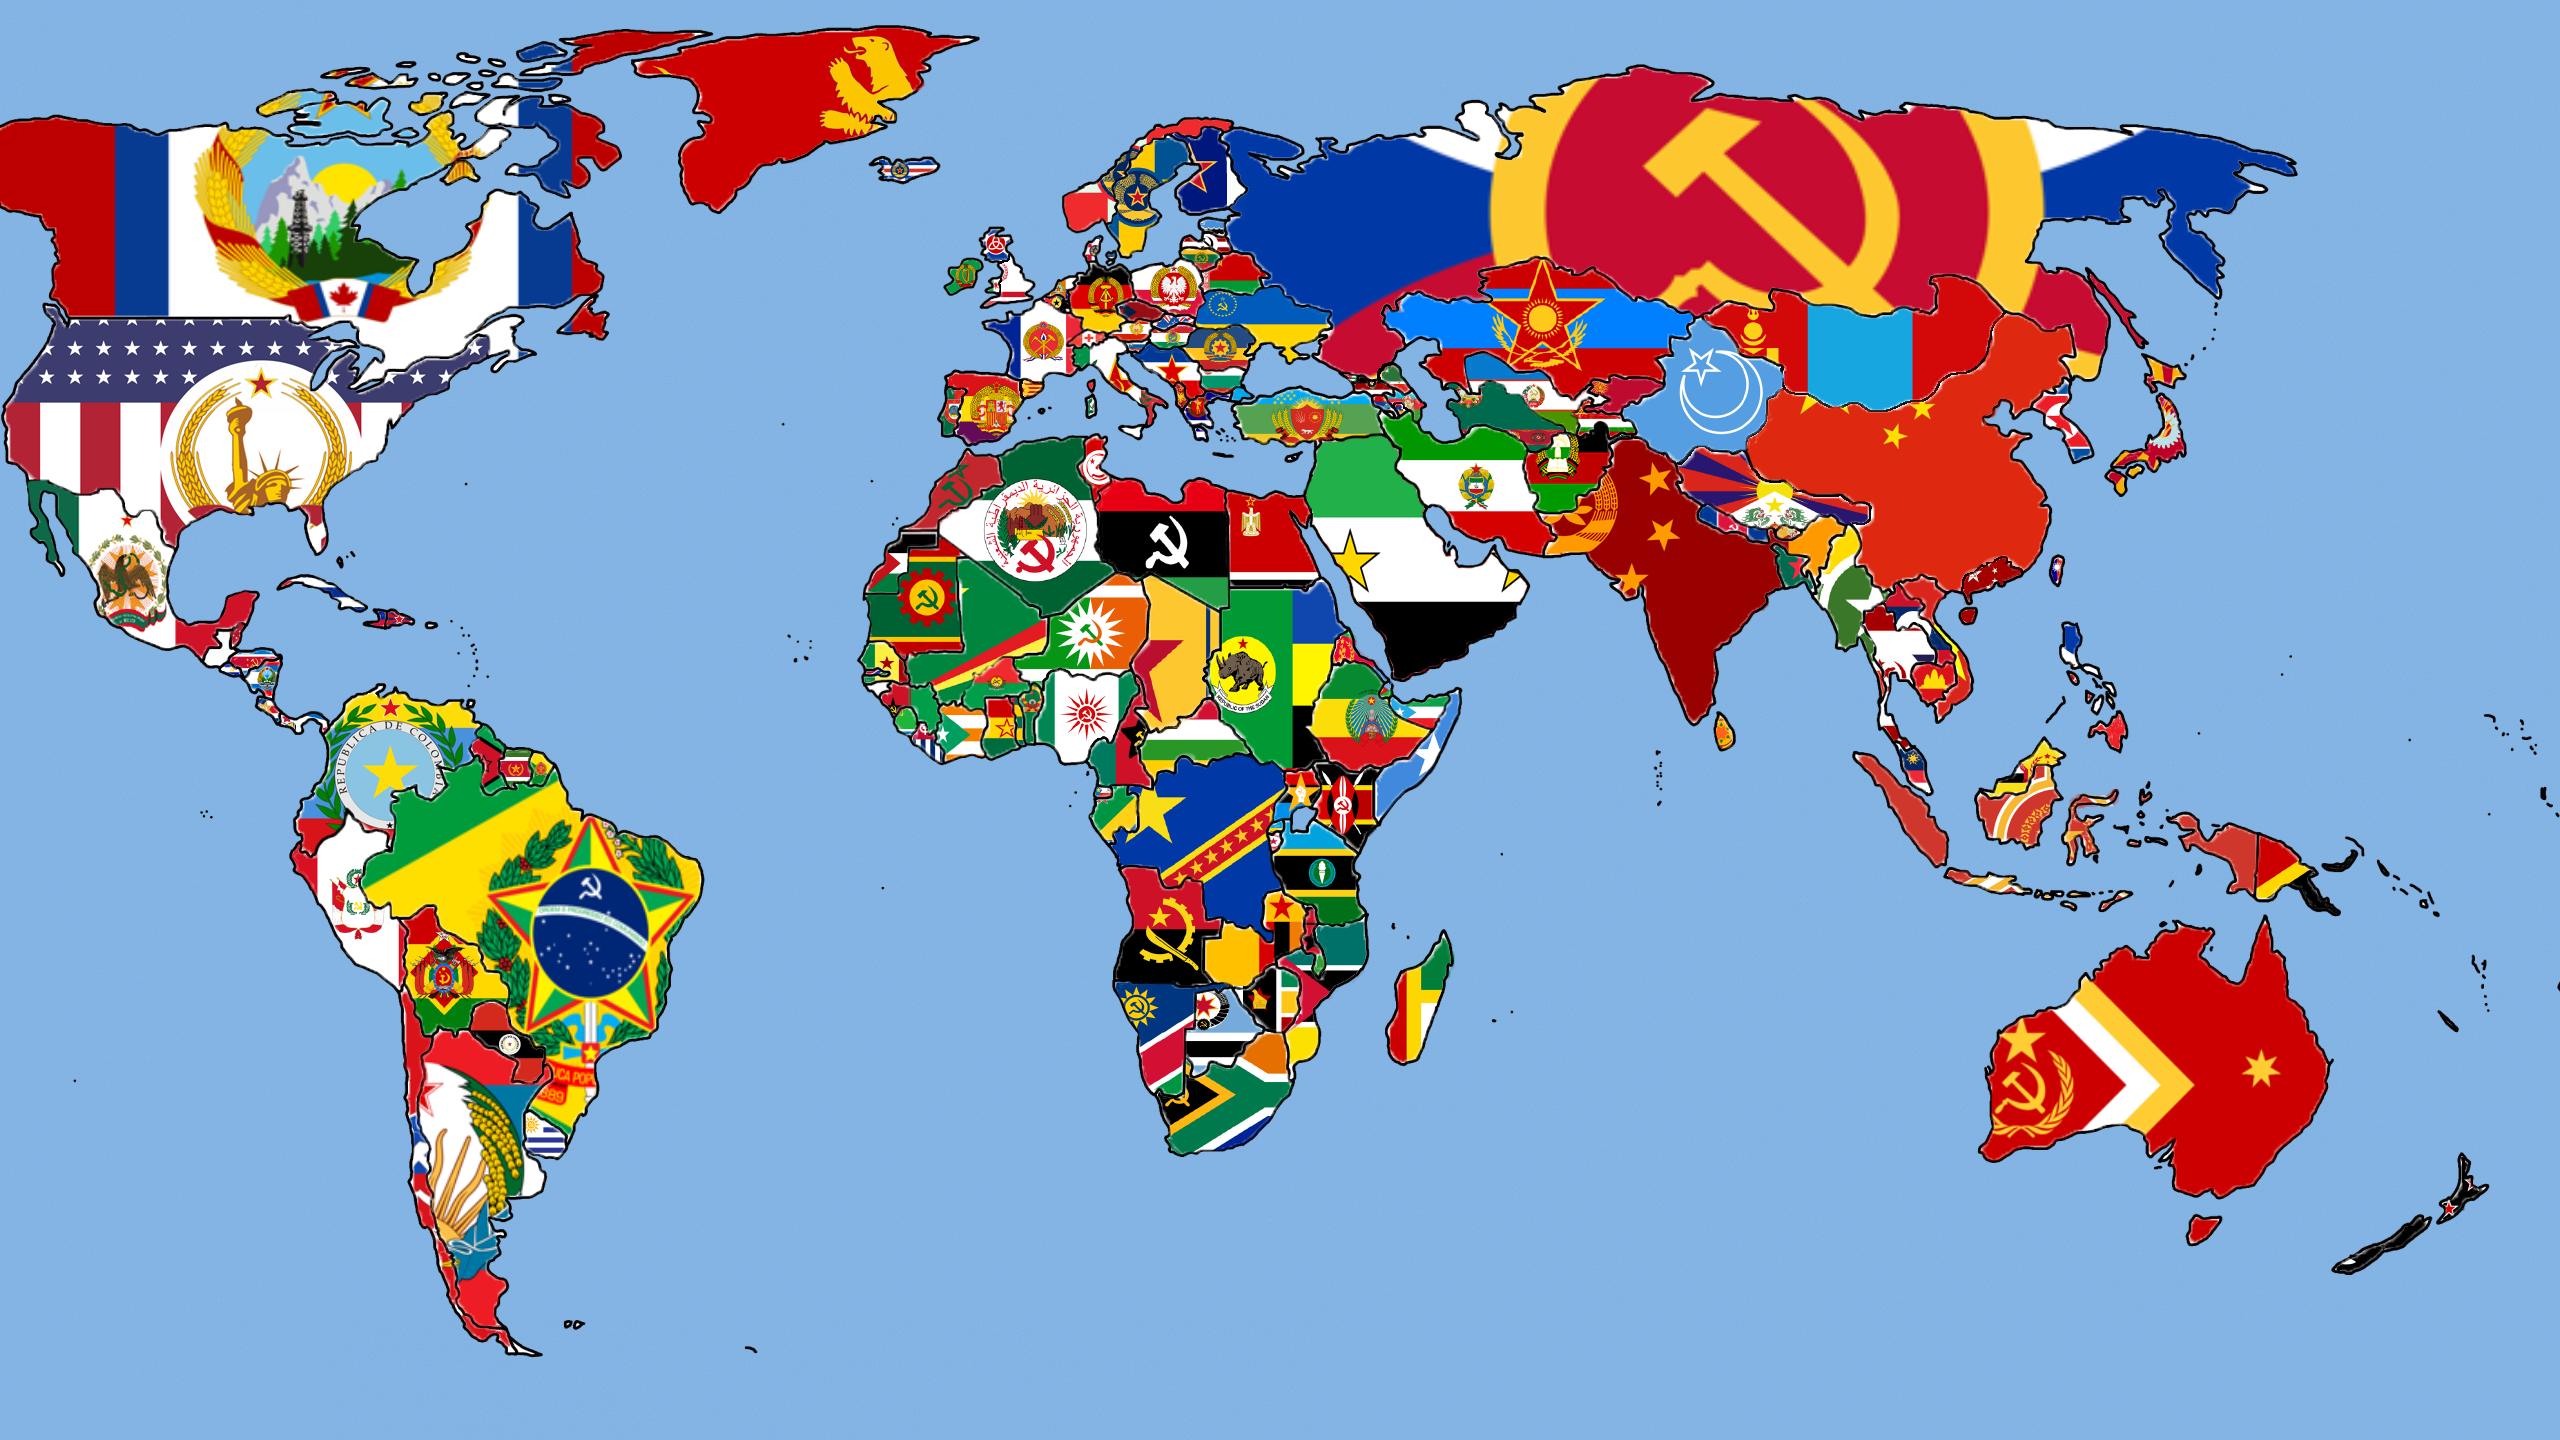 Communist world flag map : vexillology